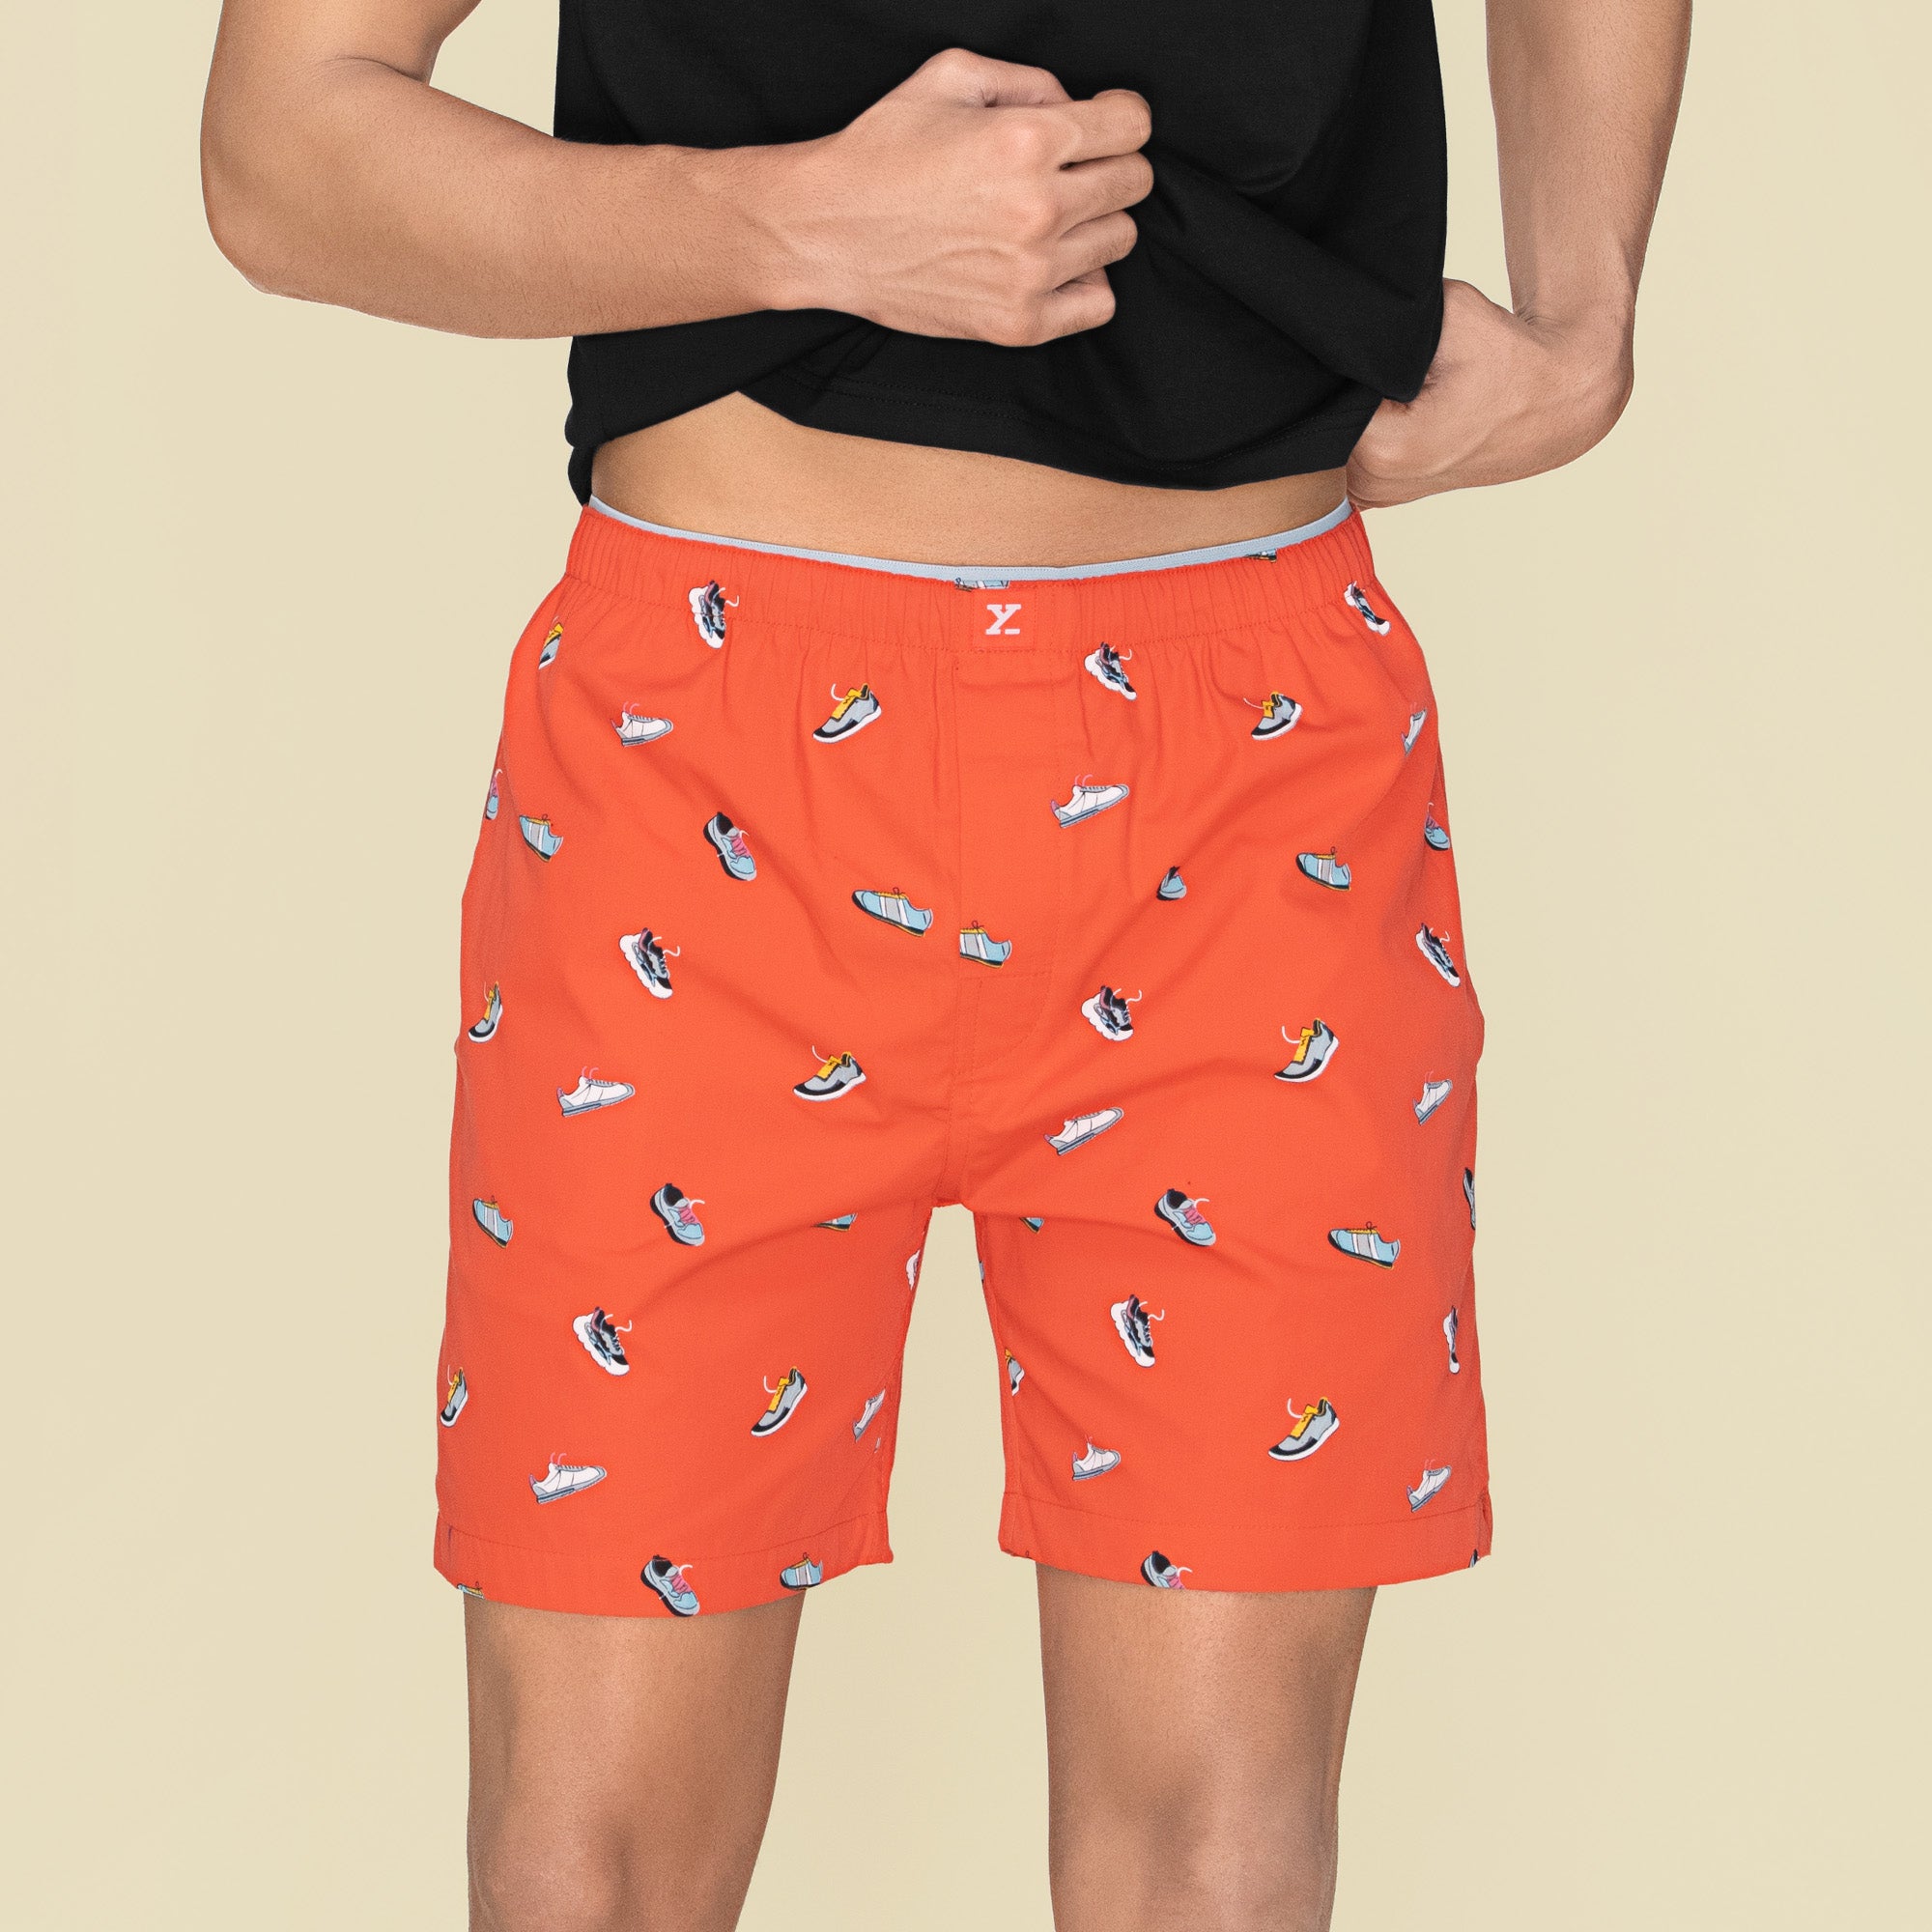 Renew Combed Cotton Boxer Shorts For Men Orange Zest - XYXX Mens Apparels